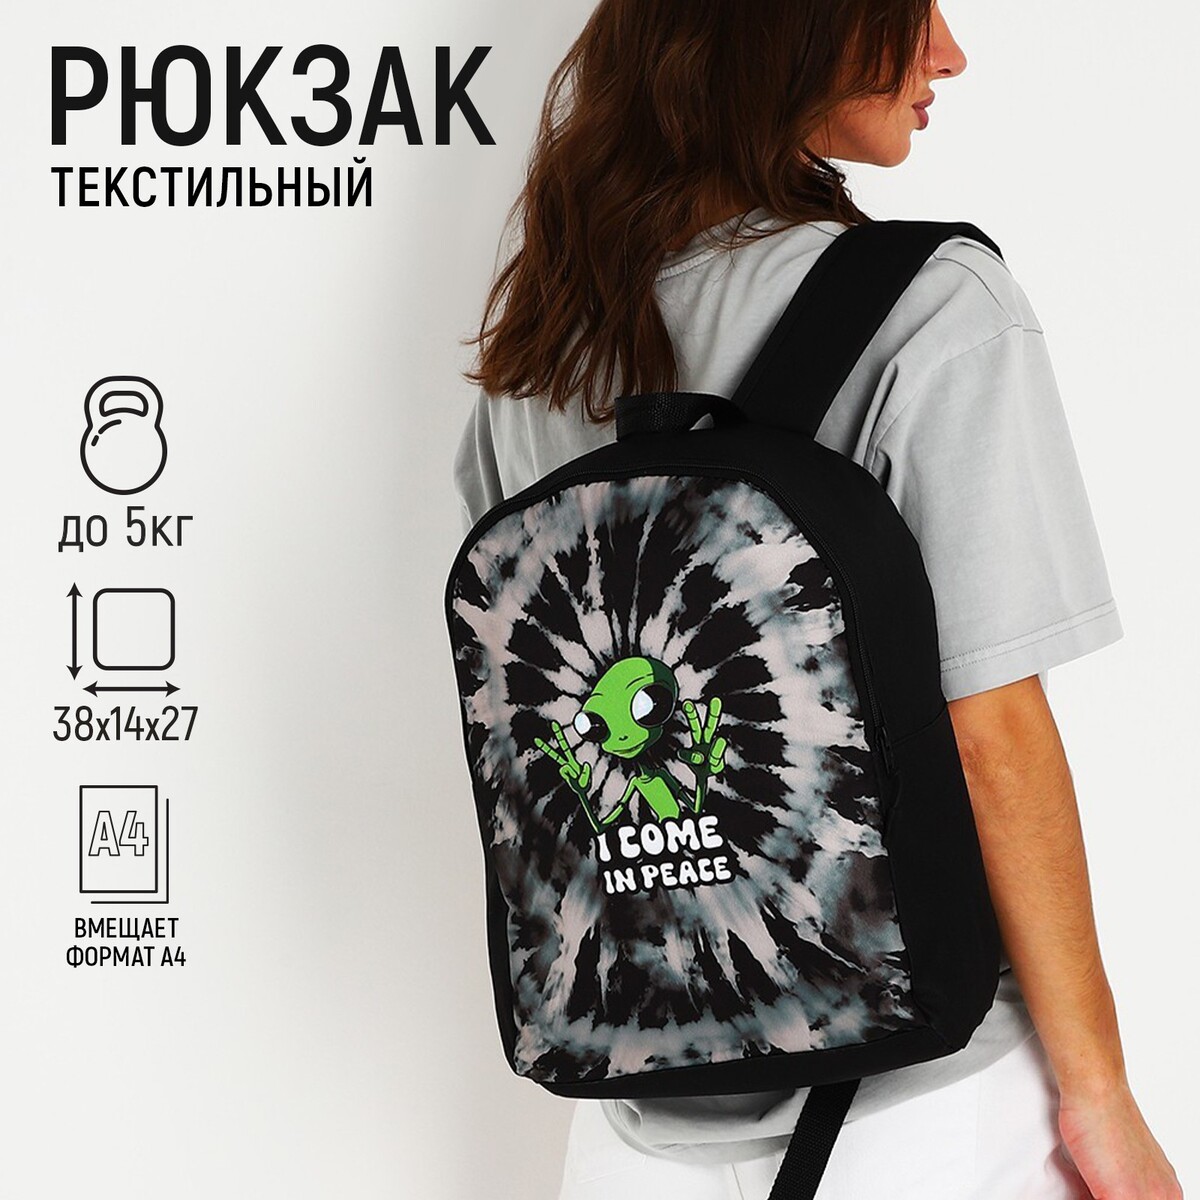 Рюкзак текстильный инопланетянин, 38х14х27 см, цвет черный рюкзак текстильный утка 38х14х27 см